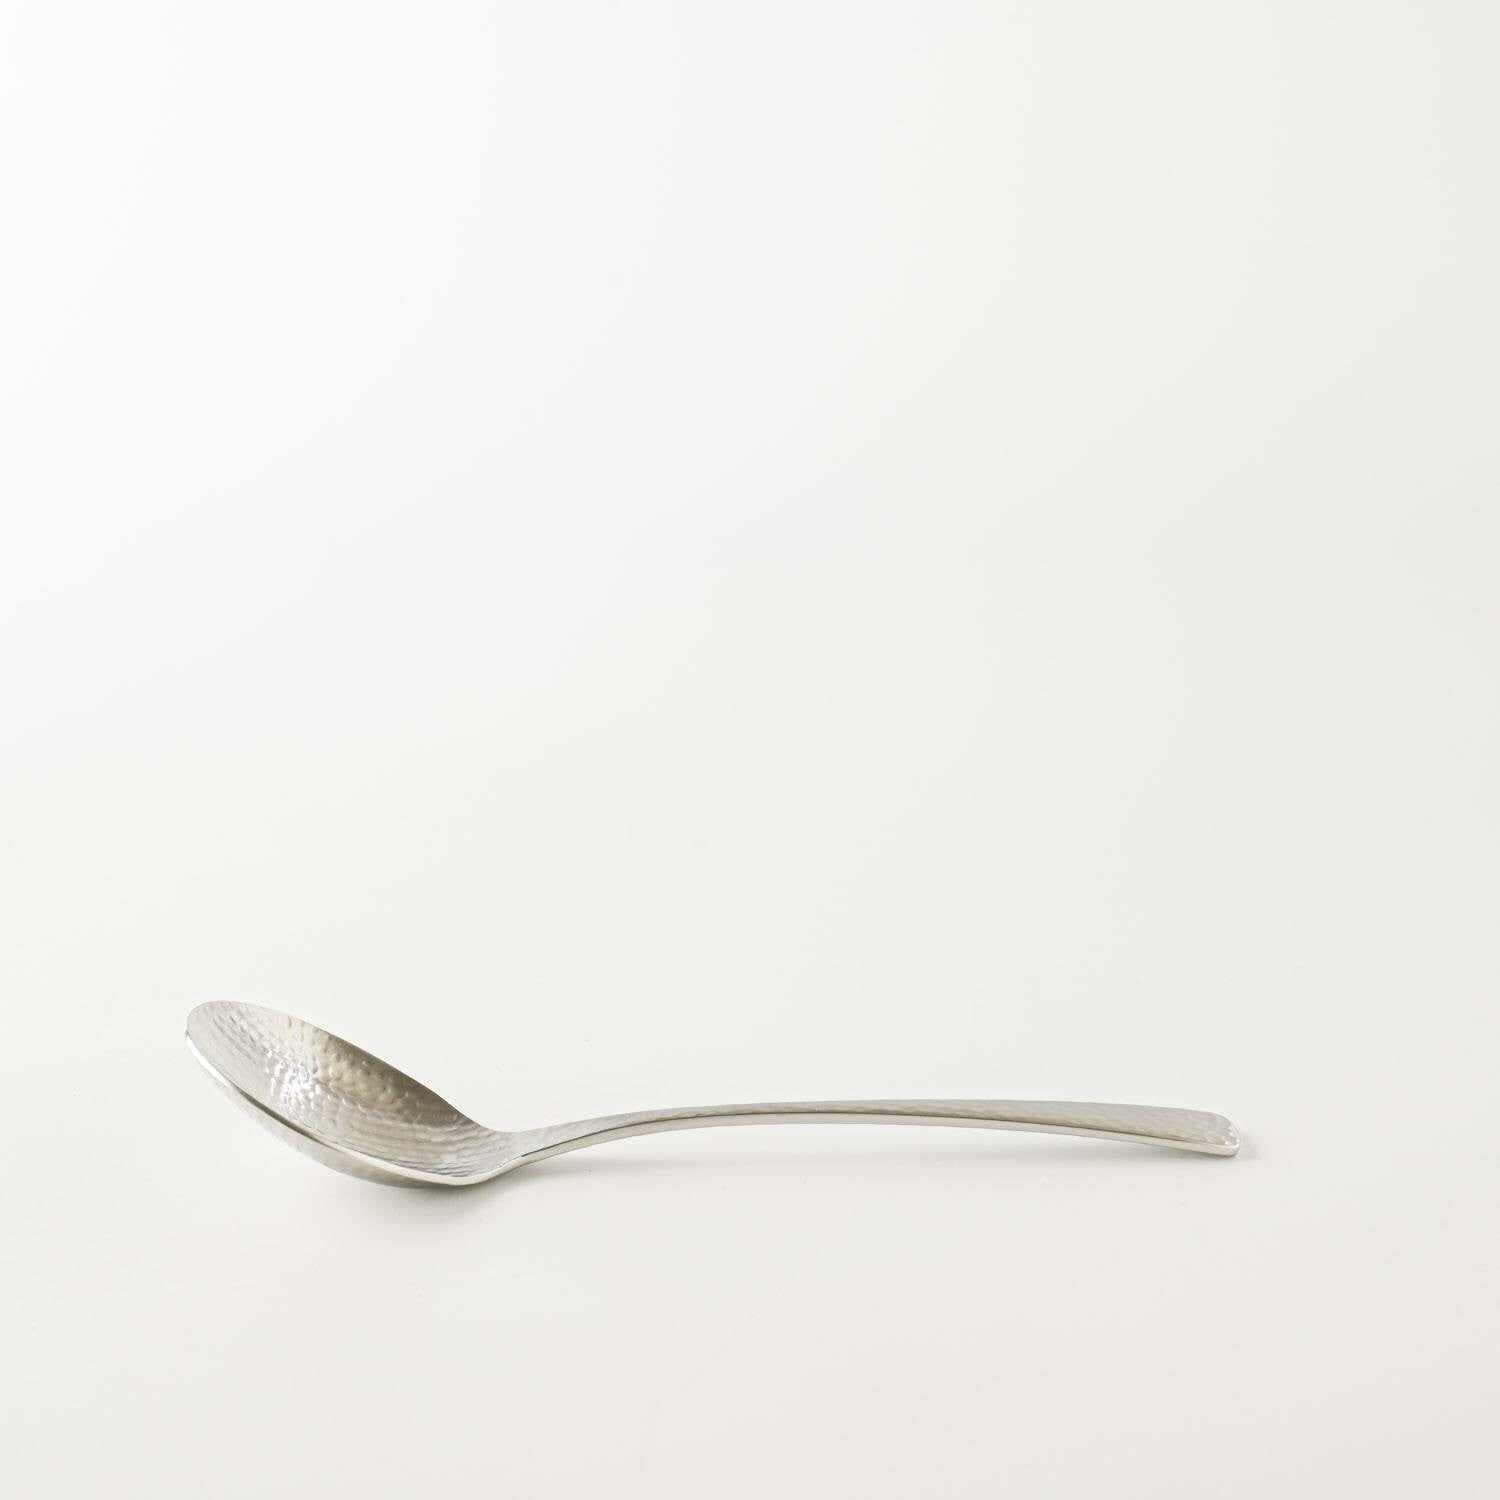 日本槌目紋匙羹 │Wafu Hammered Pattern Spoon